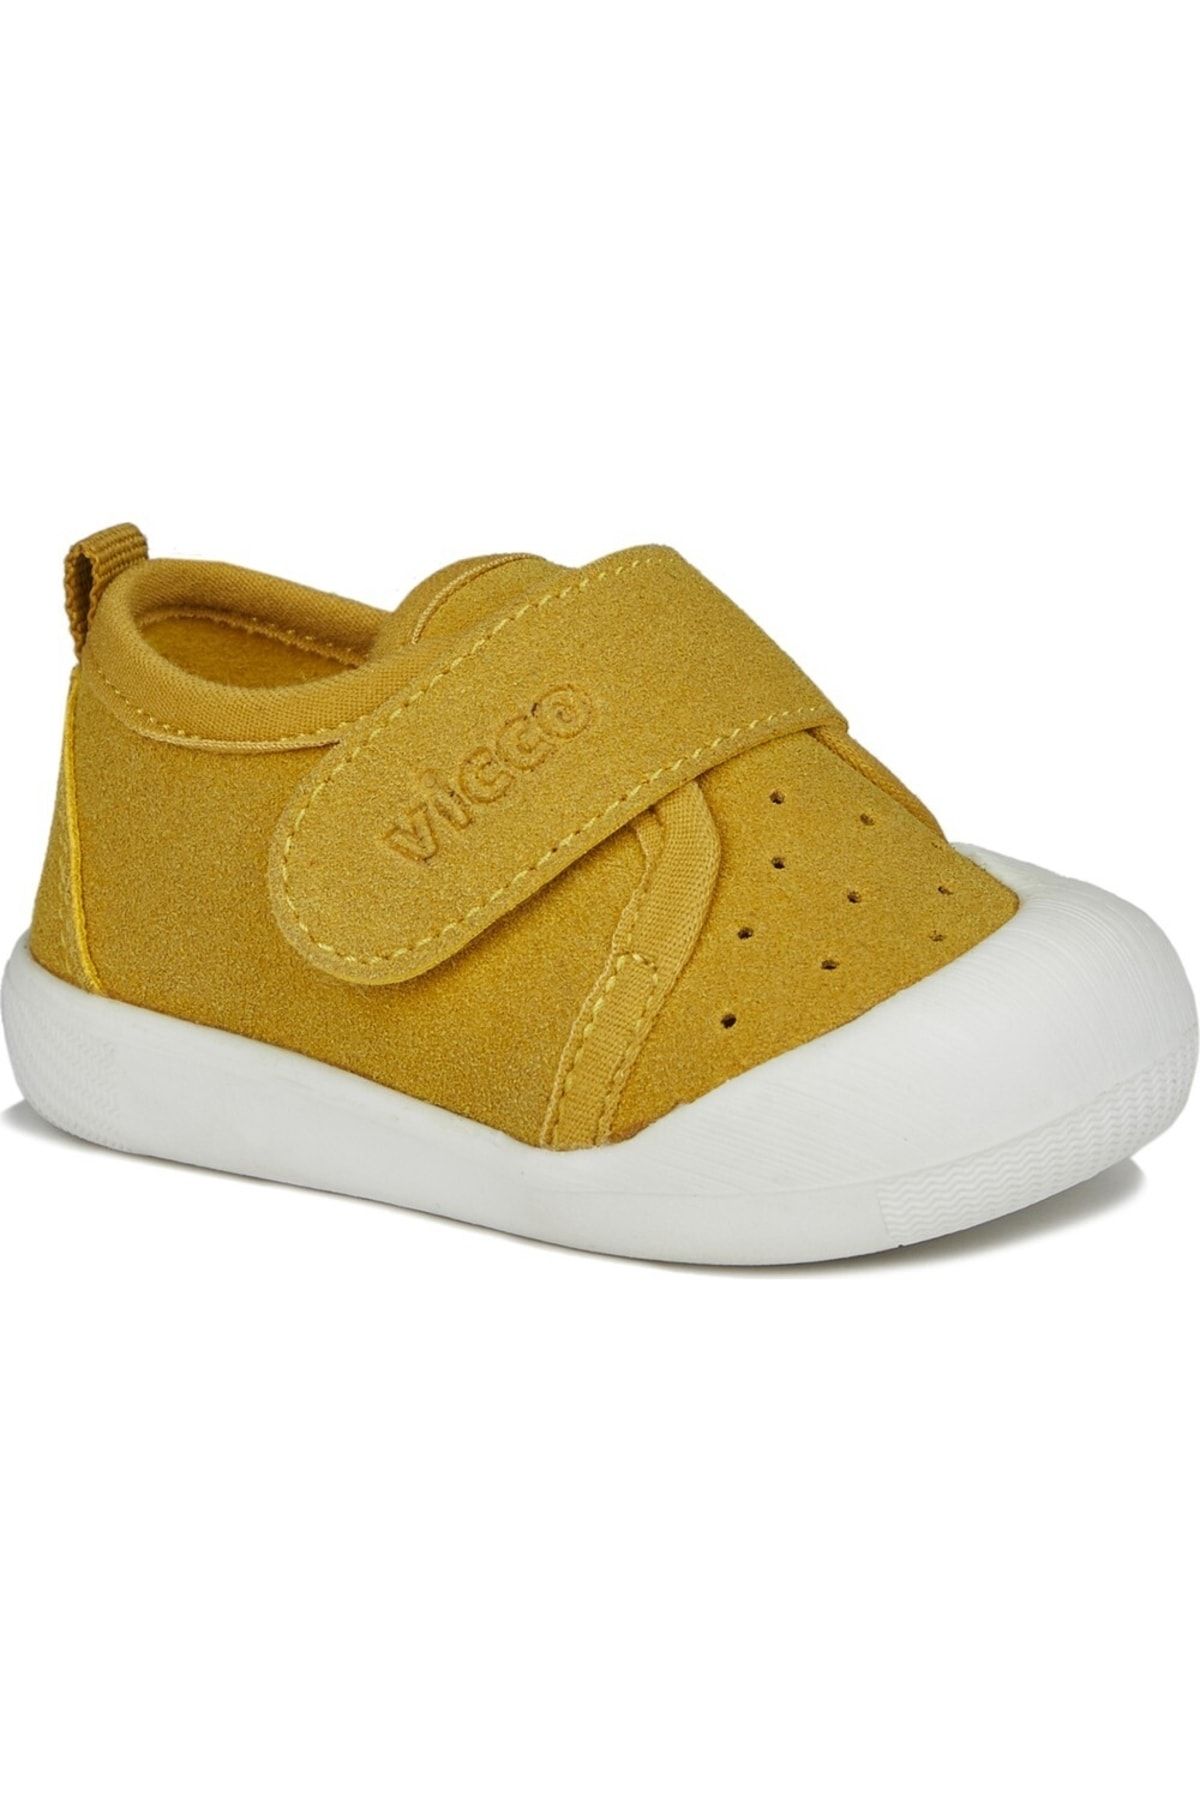 Vicco Anka-950 Sarı Bebe Ayakkabı